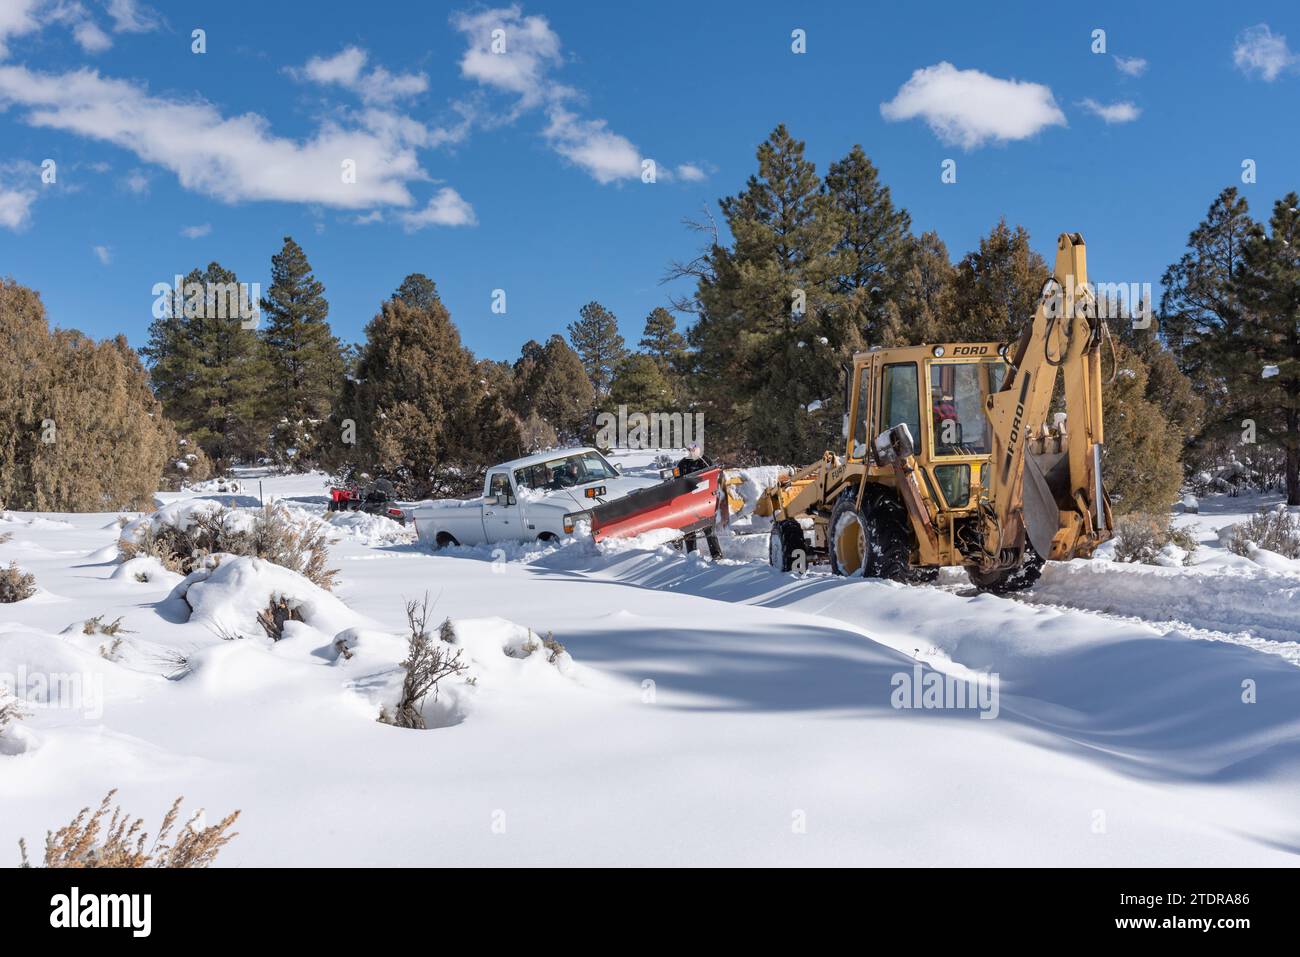 Weißer Pickup-Truck steckt im Schnee und ein gelber Ford-Baggerlader auf einer abgelegenen Straße in den südlichen Rocky Mountains im Norden von New Mexico, USA. Stockfoto